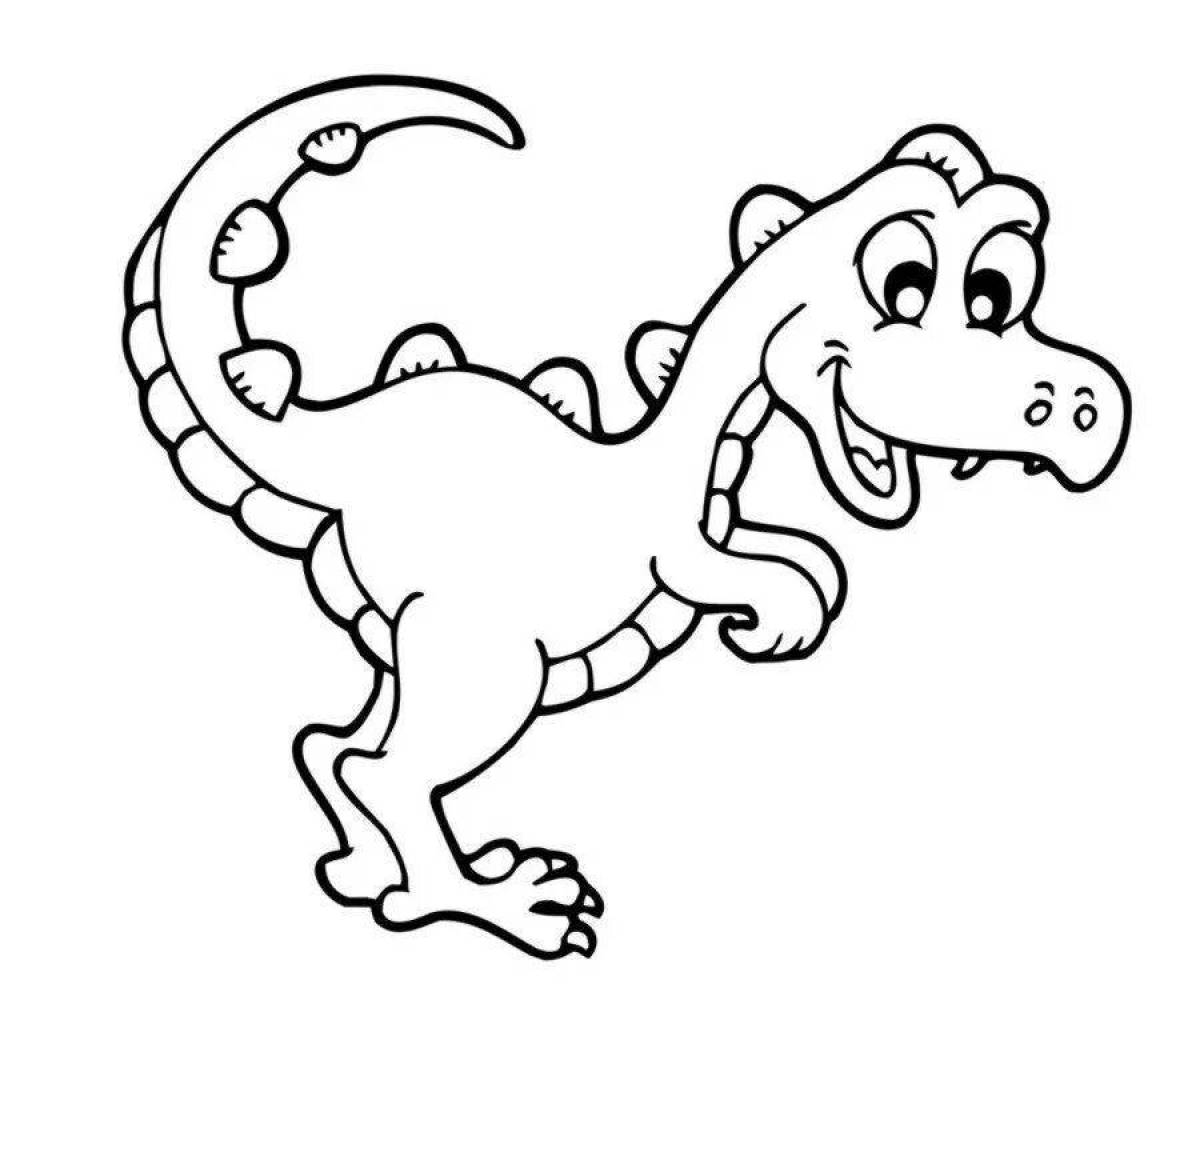 Увлекательная раскраска динозавров для детей 3-4 лет